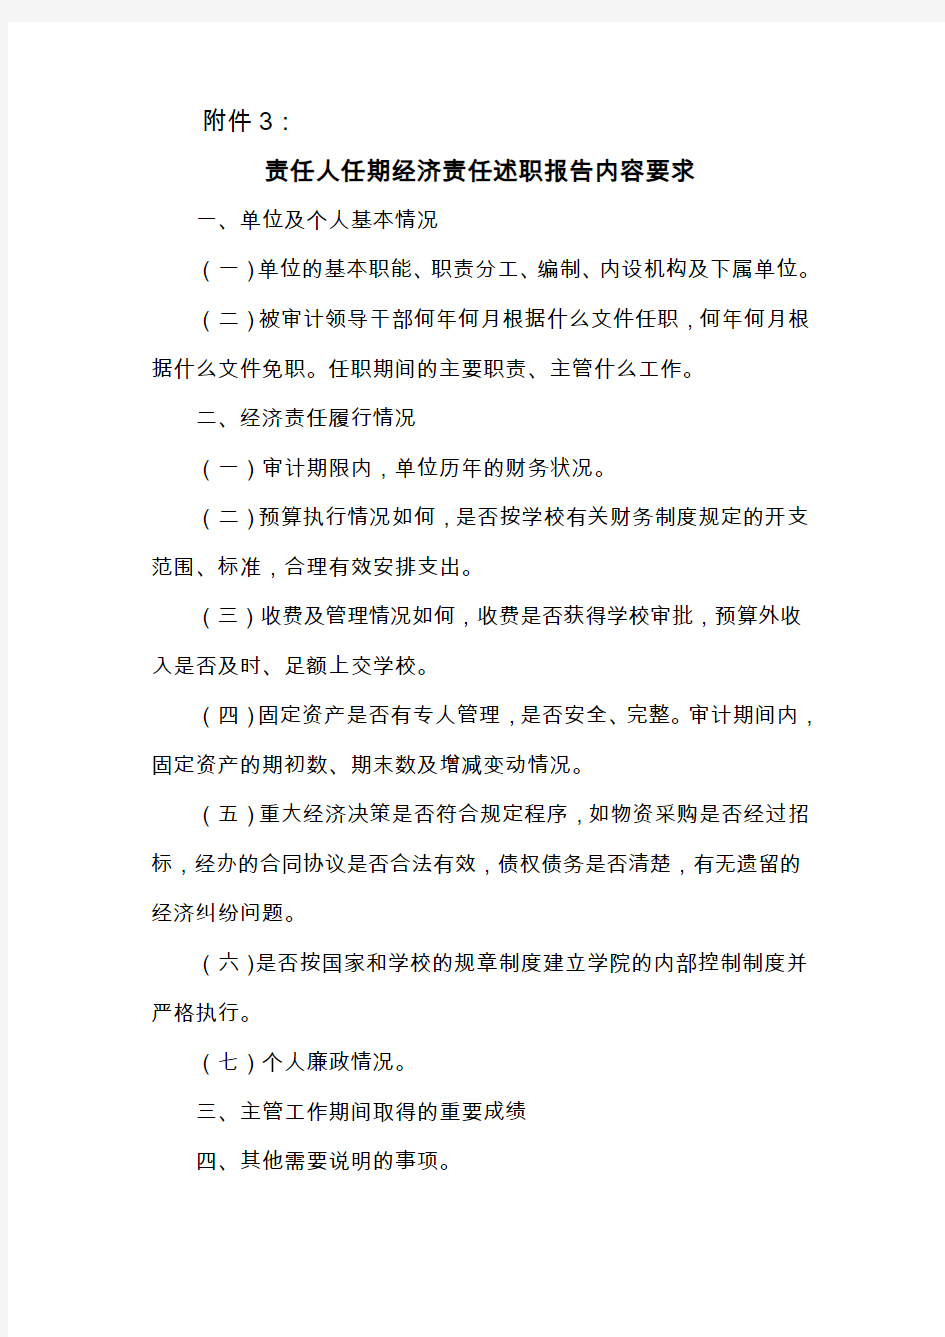 经济责任审计的通知书相关附件北京林业大学审计处